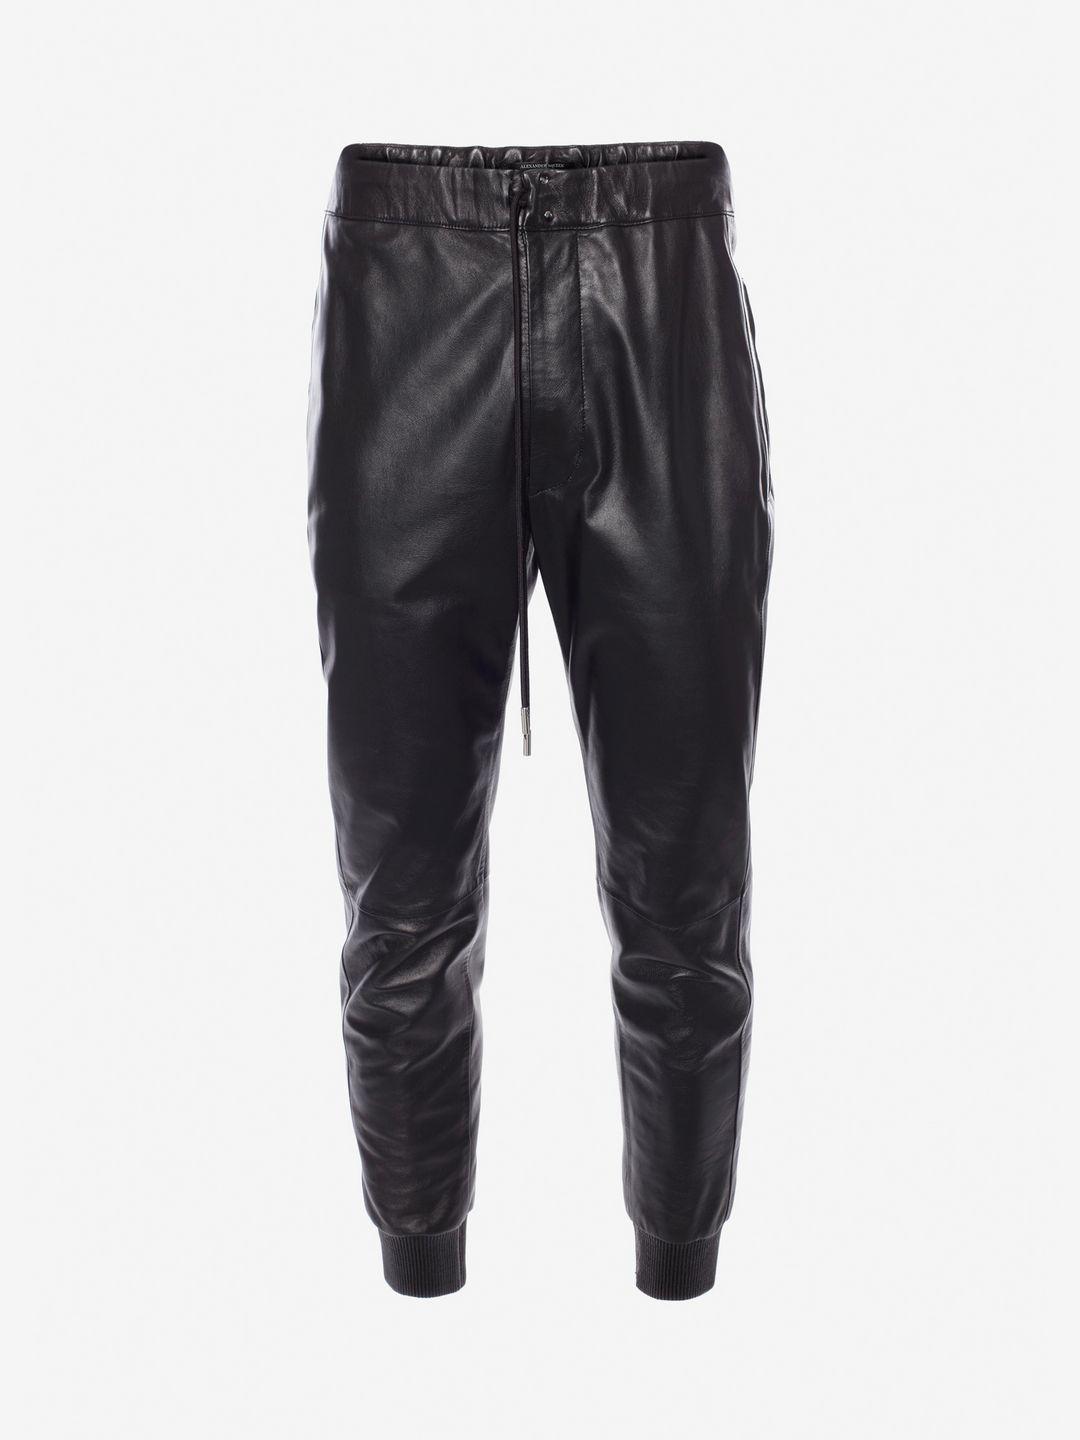 Lyst - Alexander Mcqueen Lambskin Leather Trousers in Black for Men